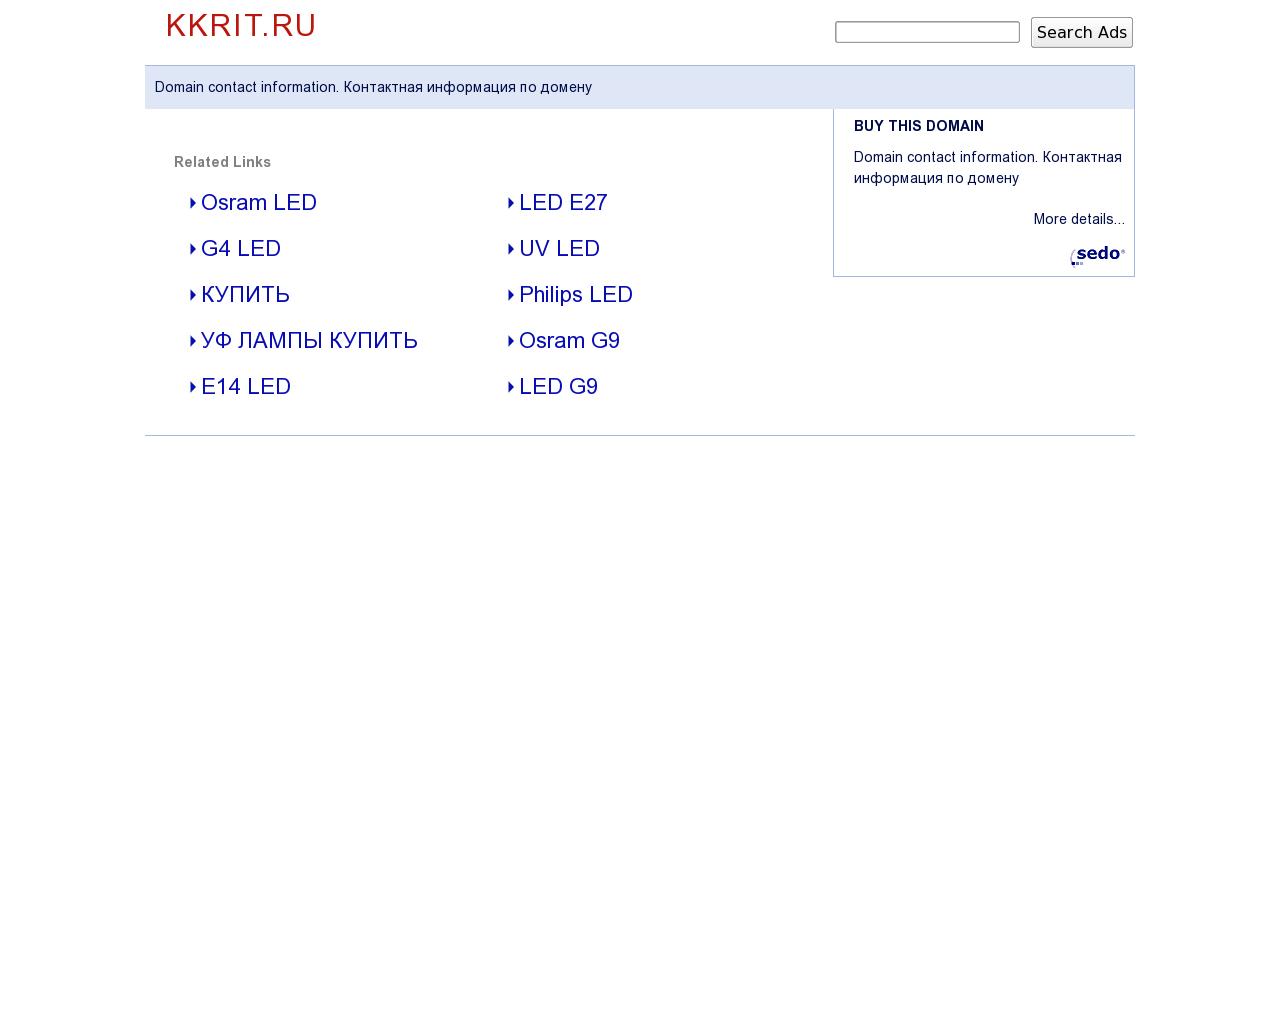 Изображение сайта kkrit.ru в разрешении 1280x1024